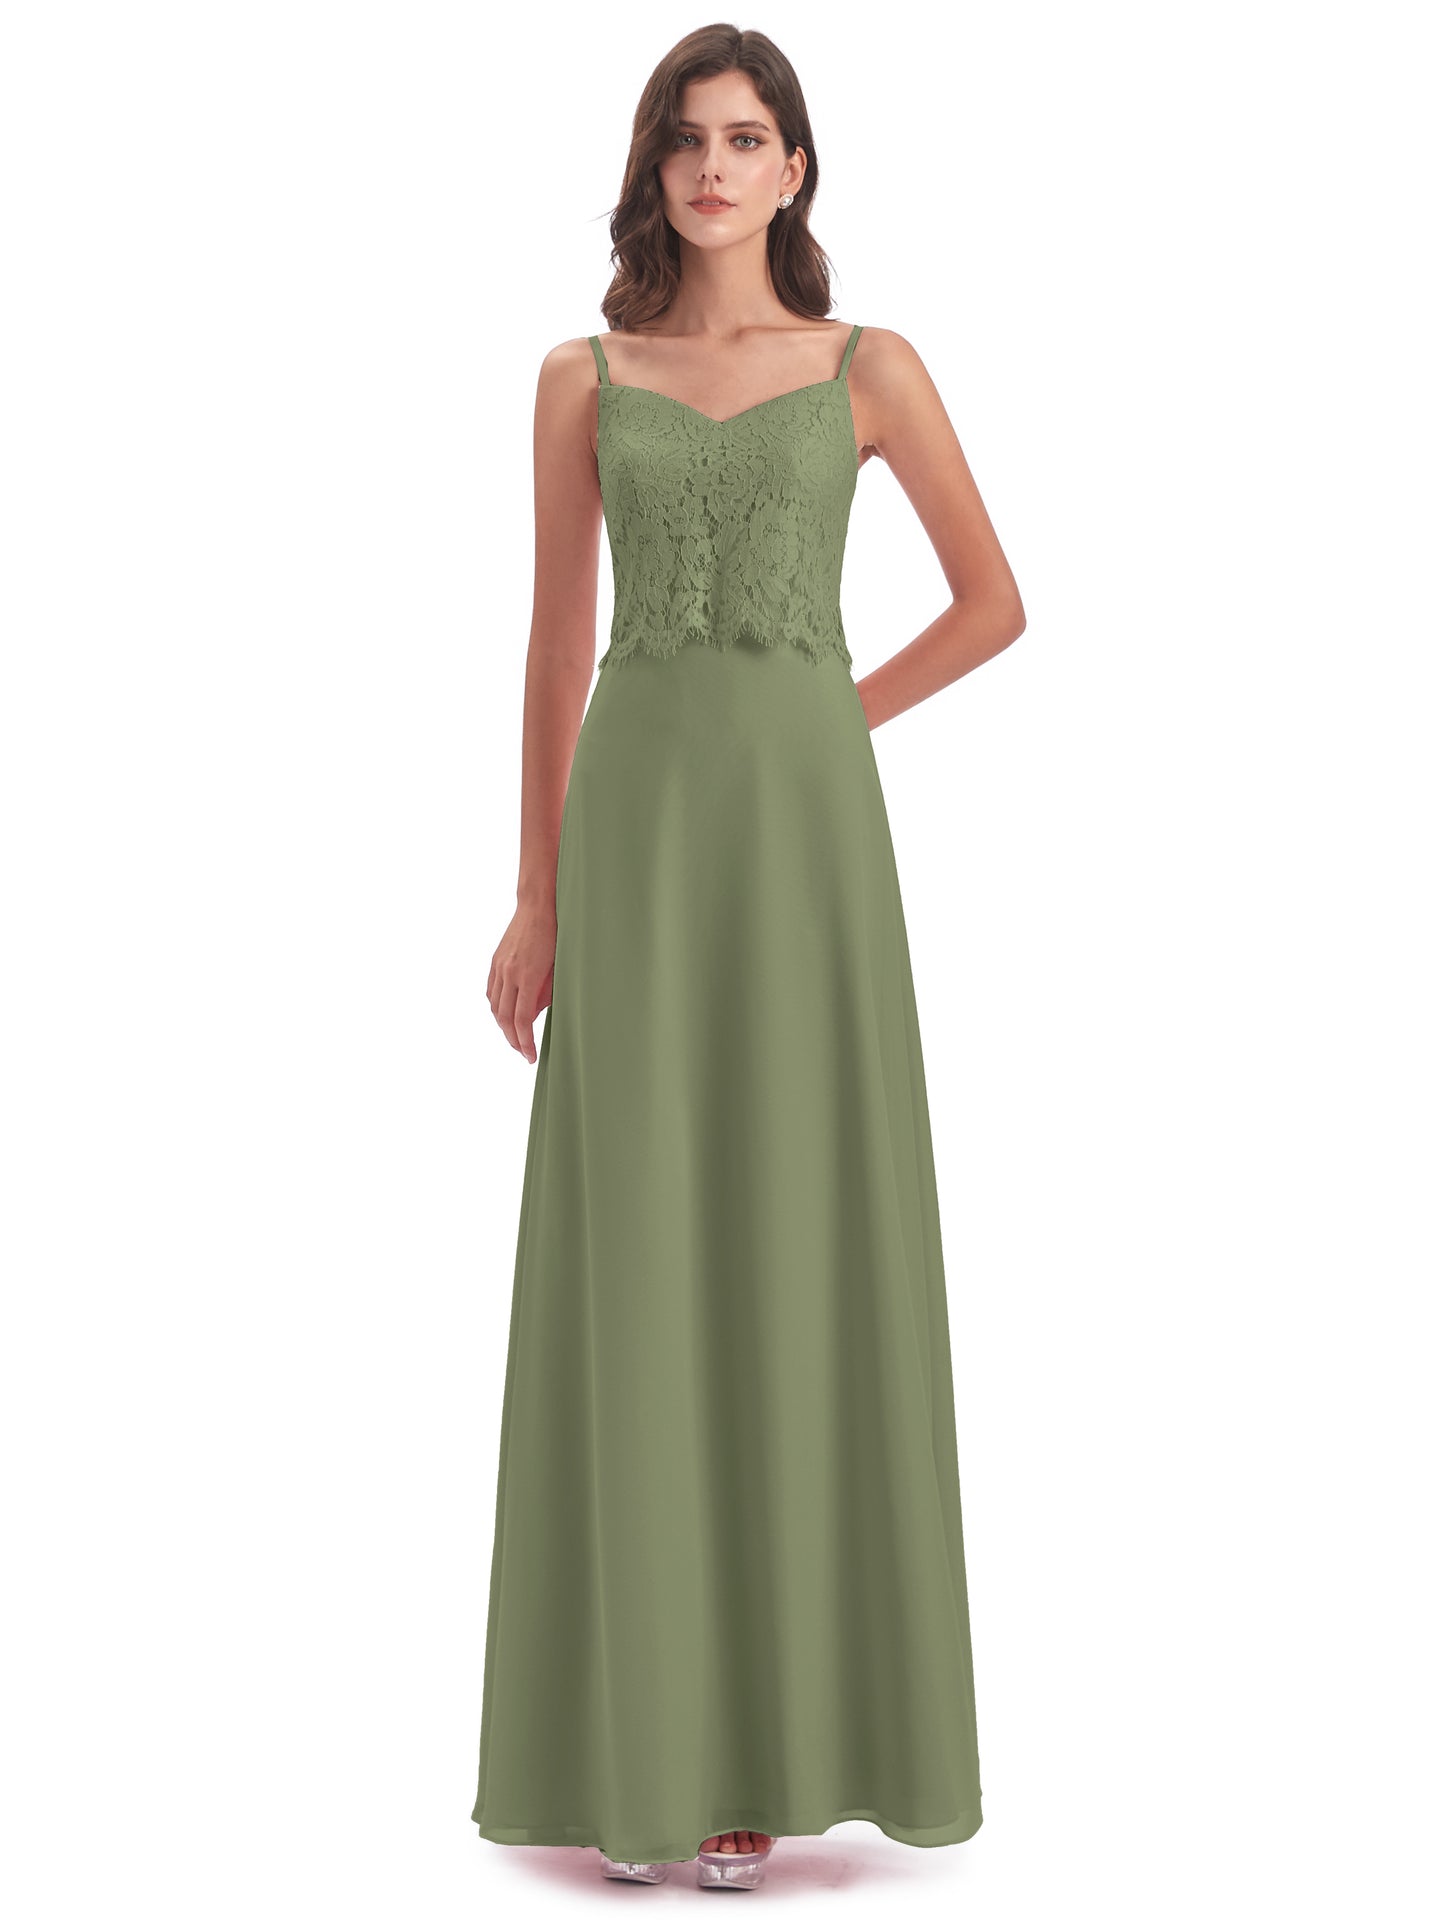 Grace Column Spaghetti Straps Lace Bridesmaid Dresses